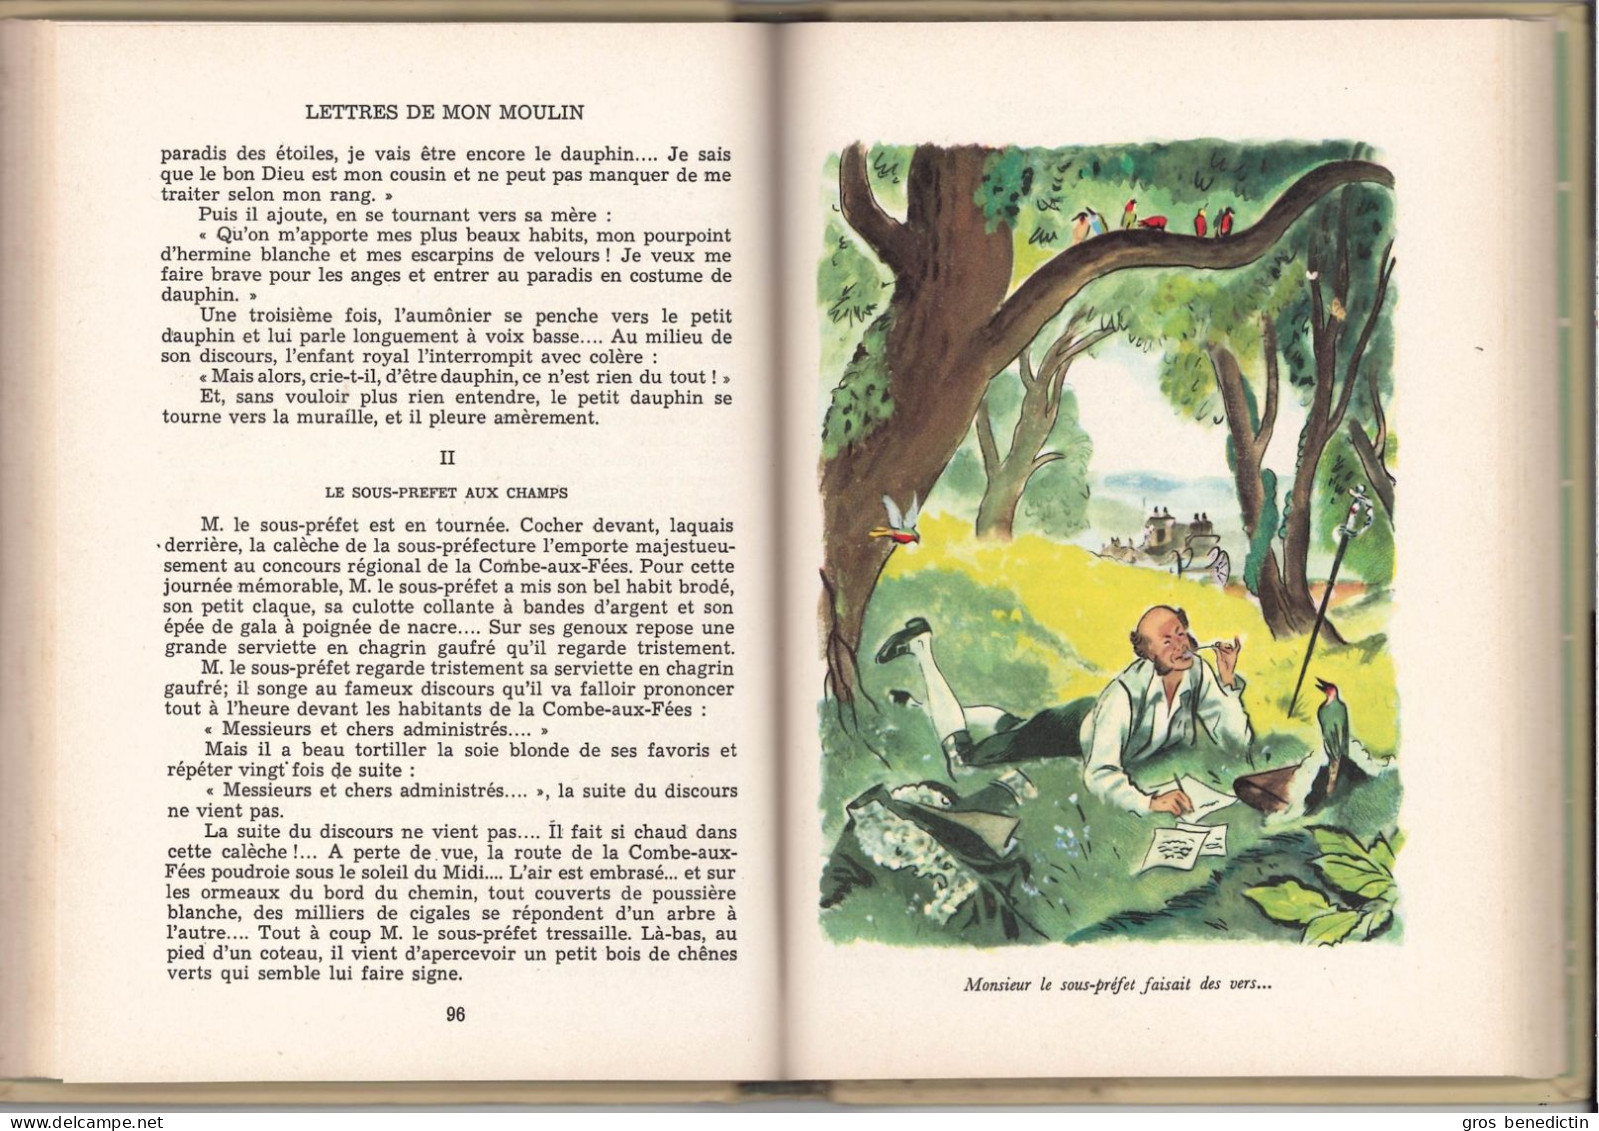 Hachette - Idéal Bibliothèque - Alphonse Daudet - "Lettres De Mon Moulin" - 1968 - #Ben&IB - Ideal Bibliotheque